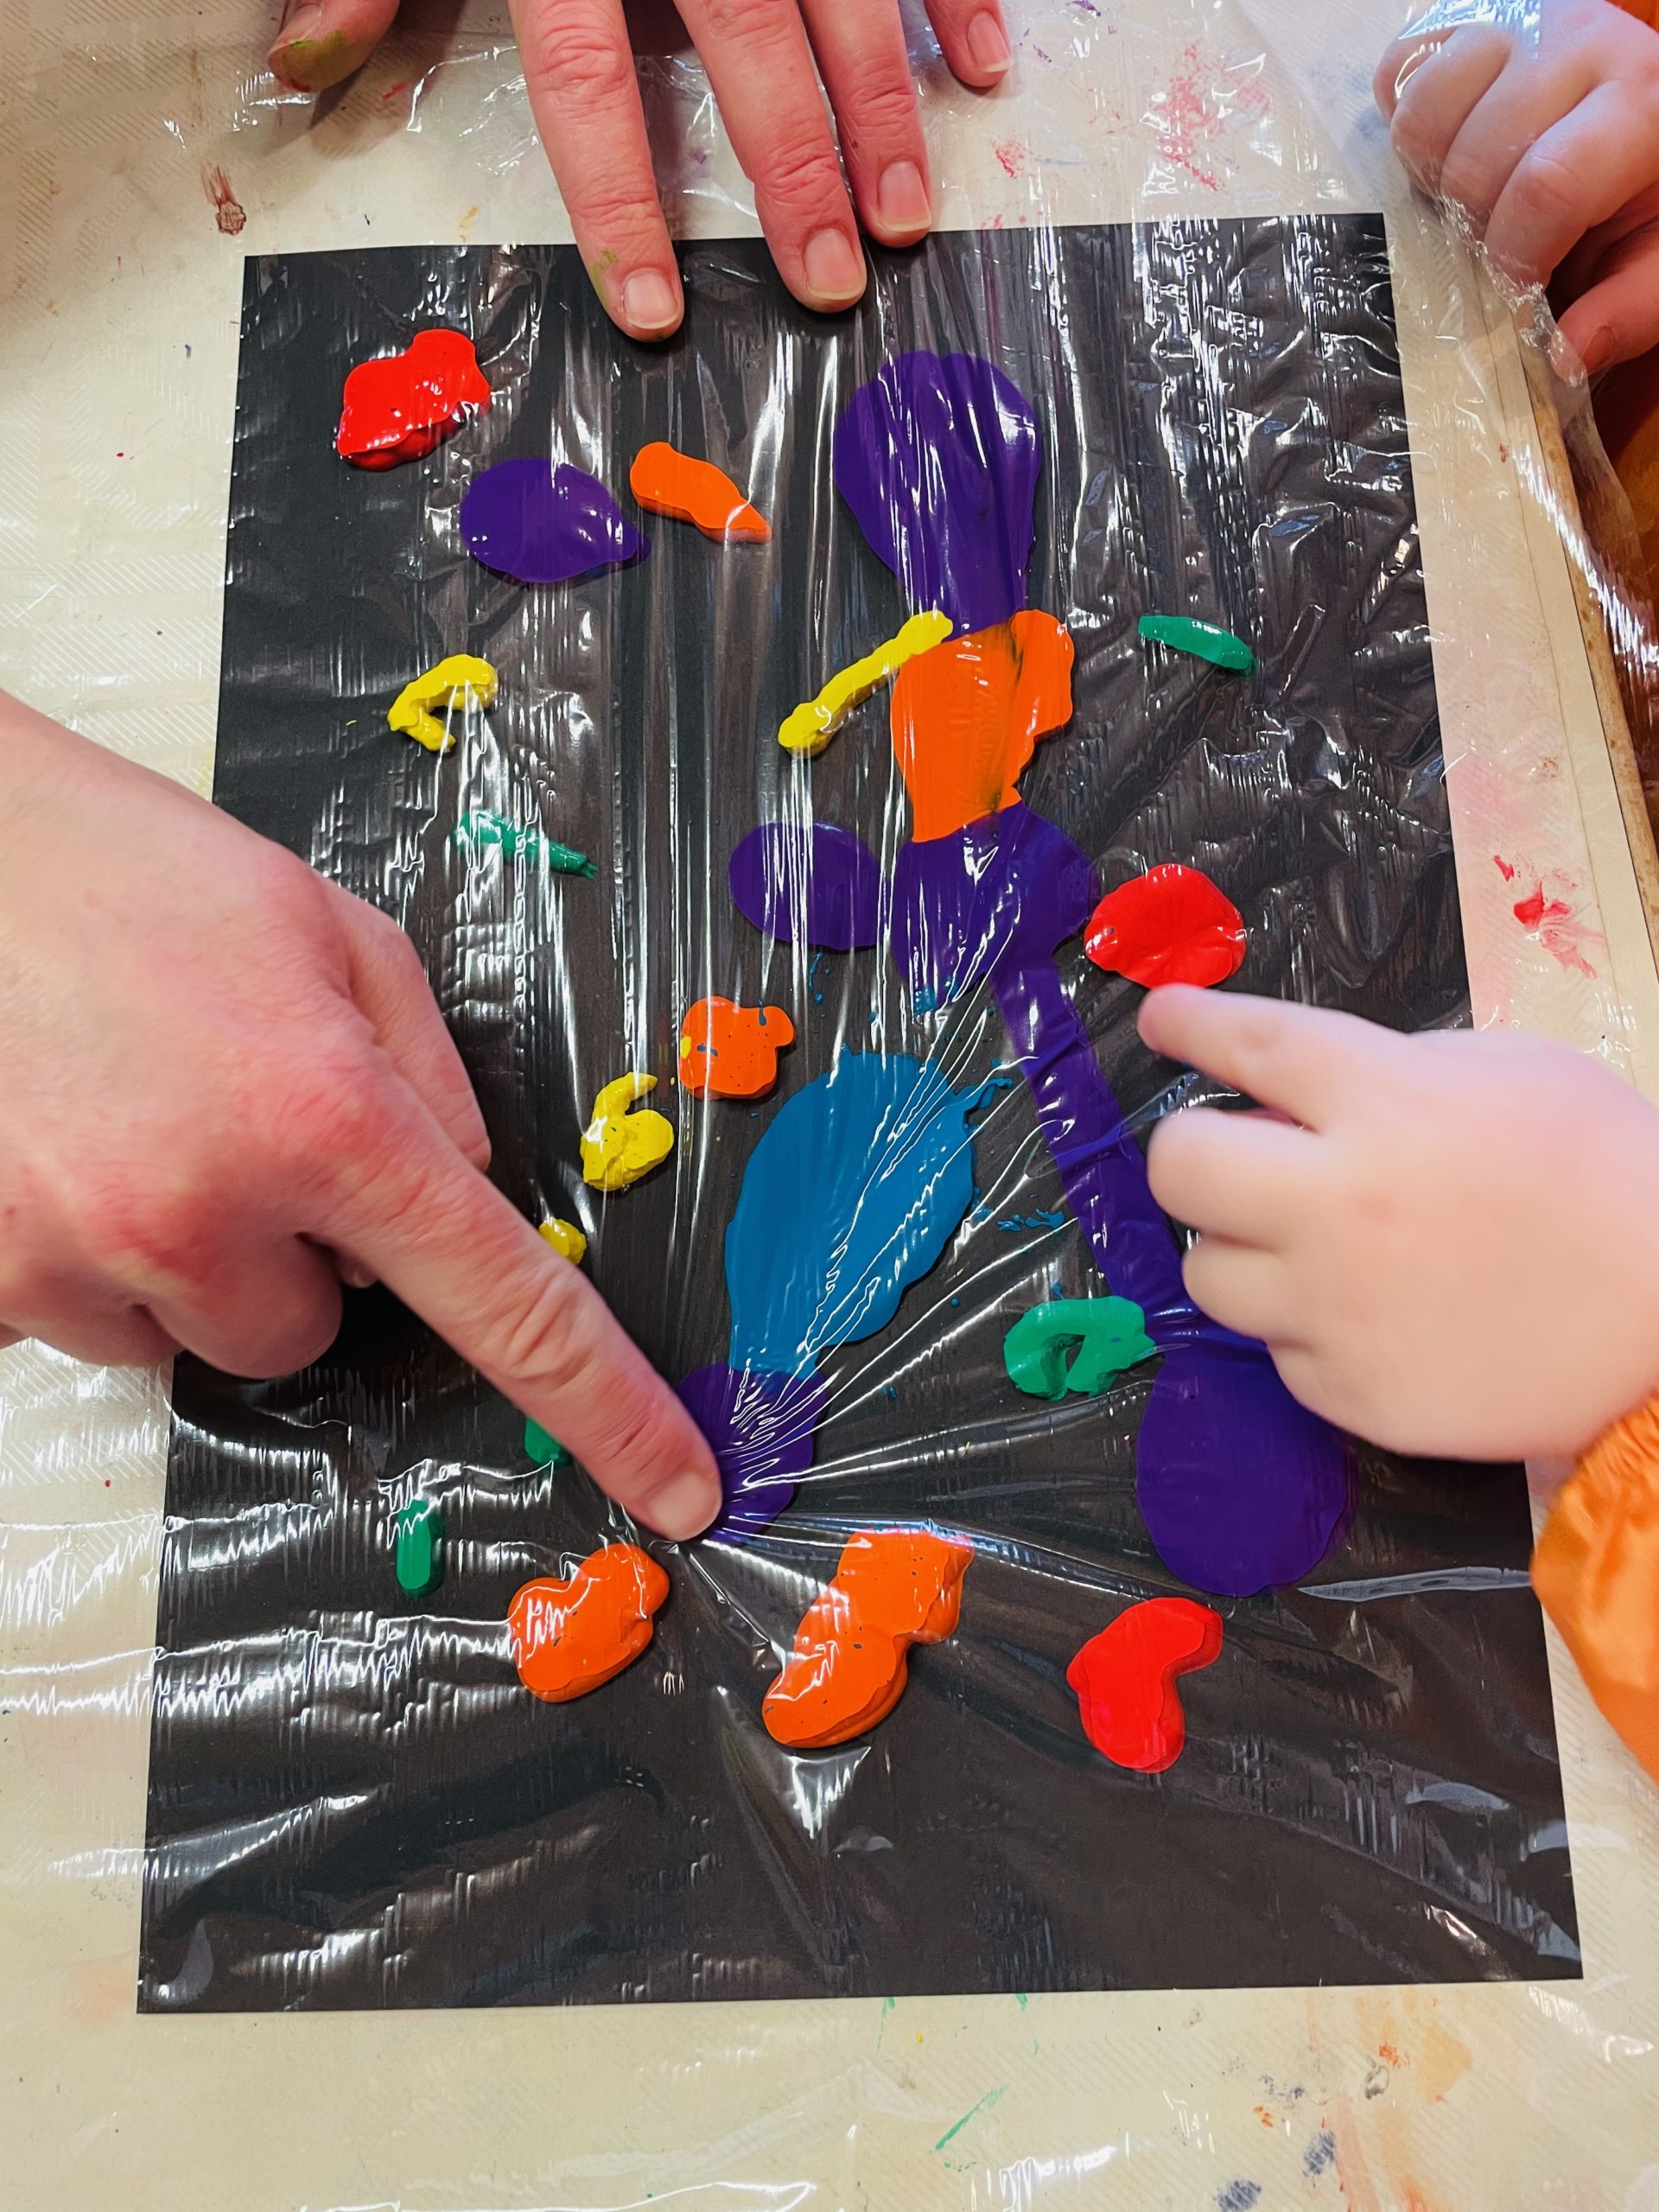 Bild zum Schritt 4 für das Bastel- und DIY-Abenteuer für Kinder: 'Beginnt nun mit den Fingern die Farbtupfer zu verstreichen. ...'